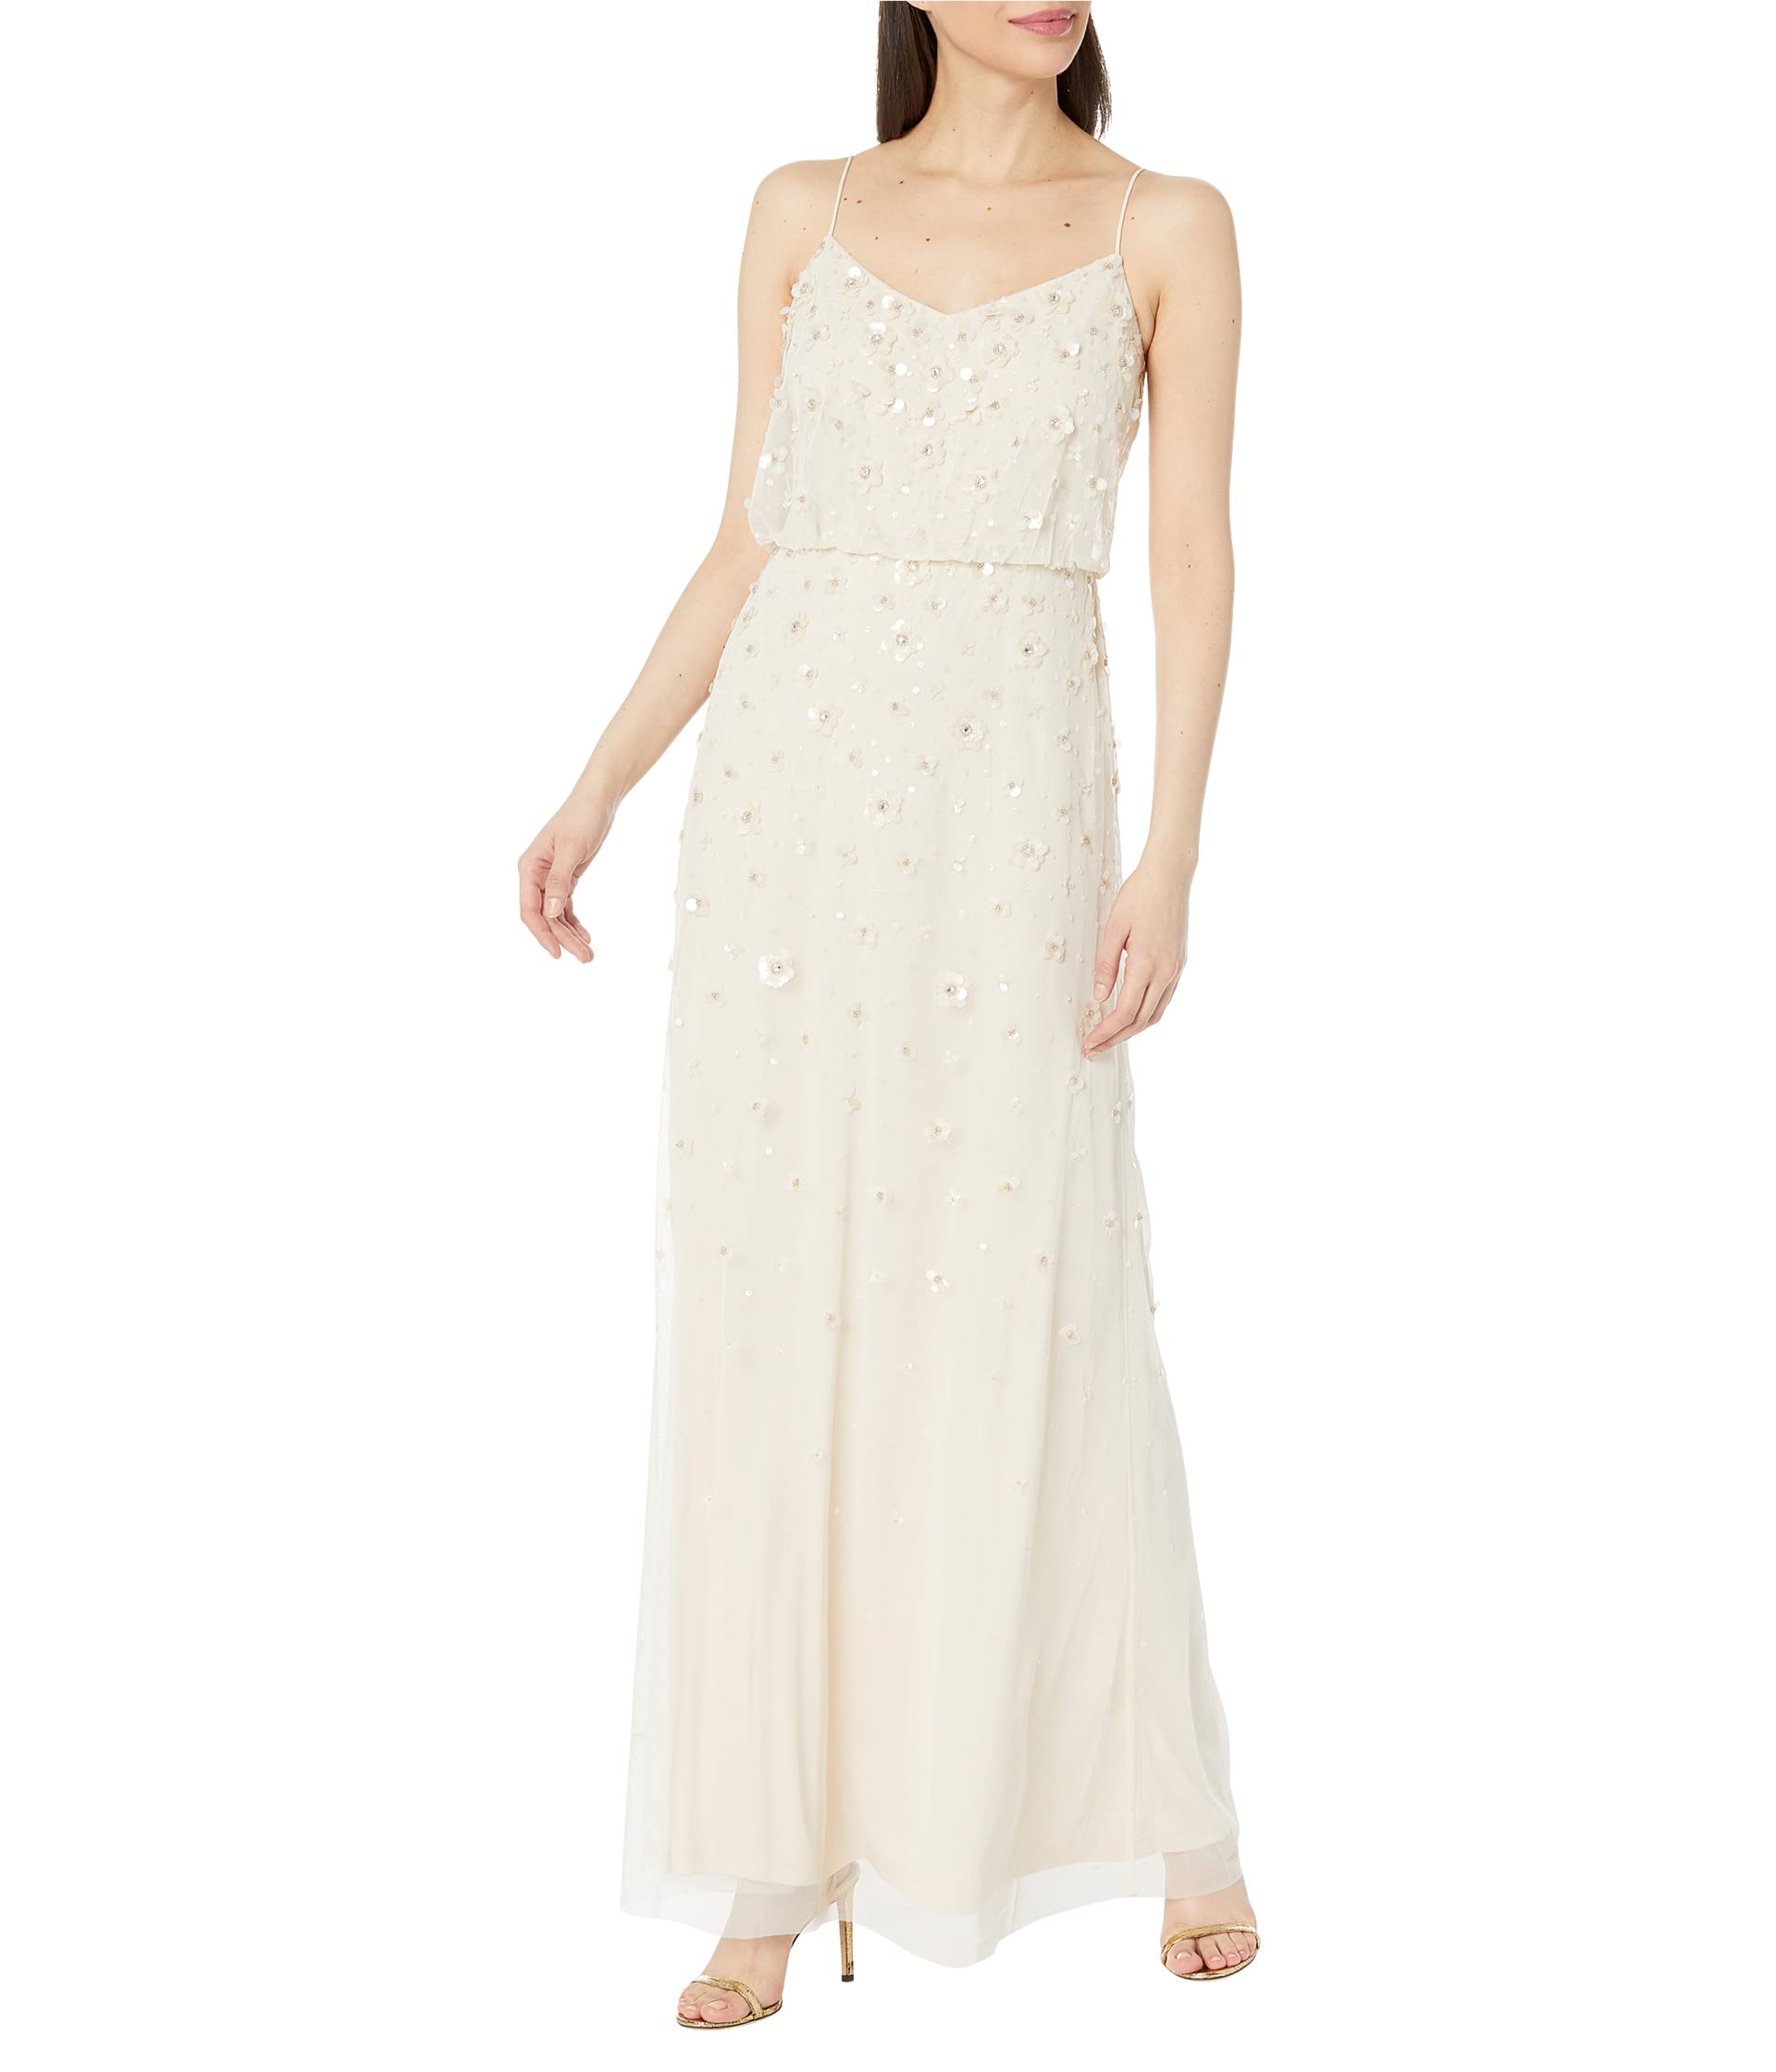 Длинное блузонное платье-комбинация с объемным бисером Adrianna Papell